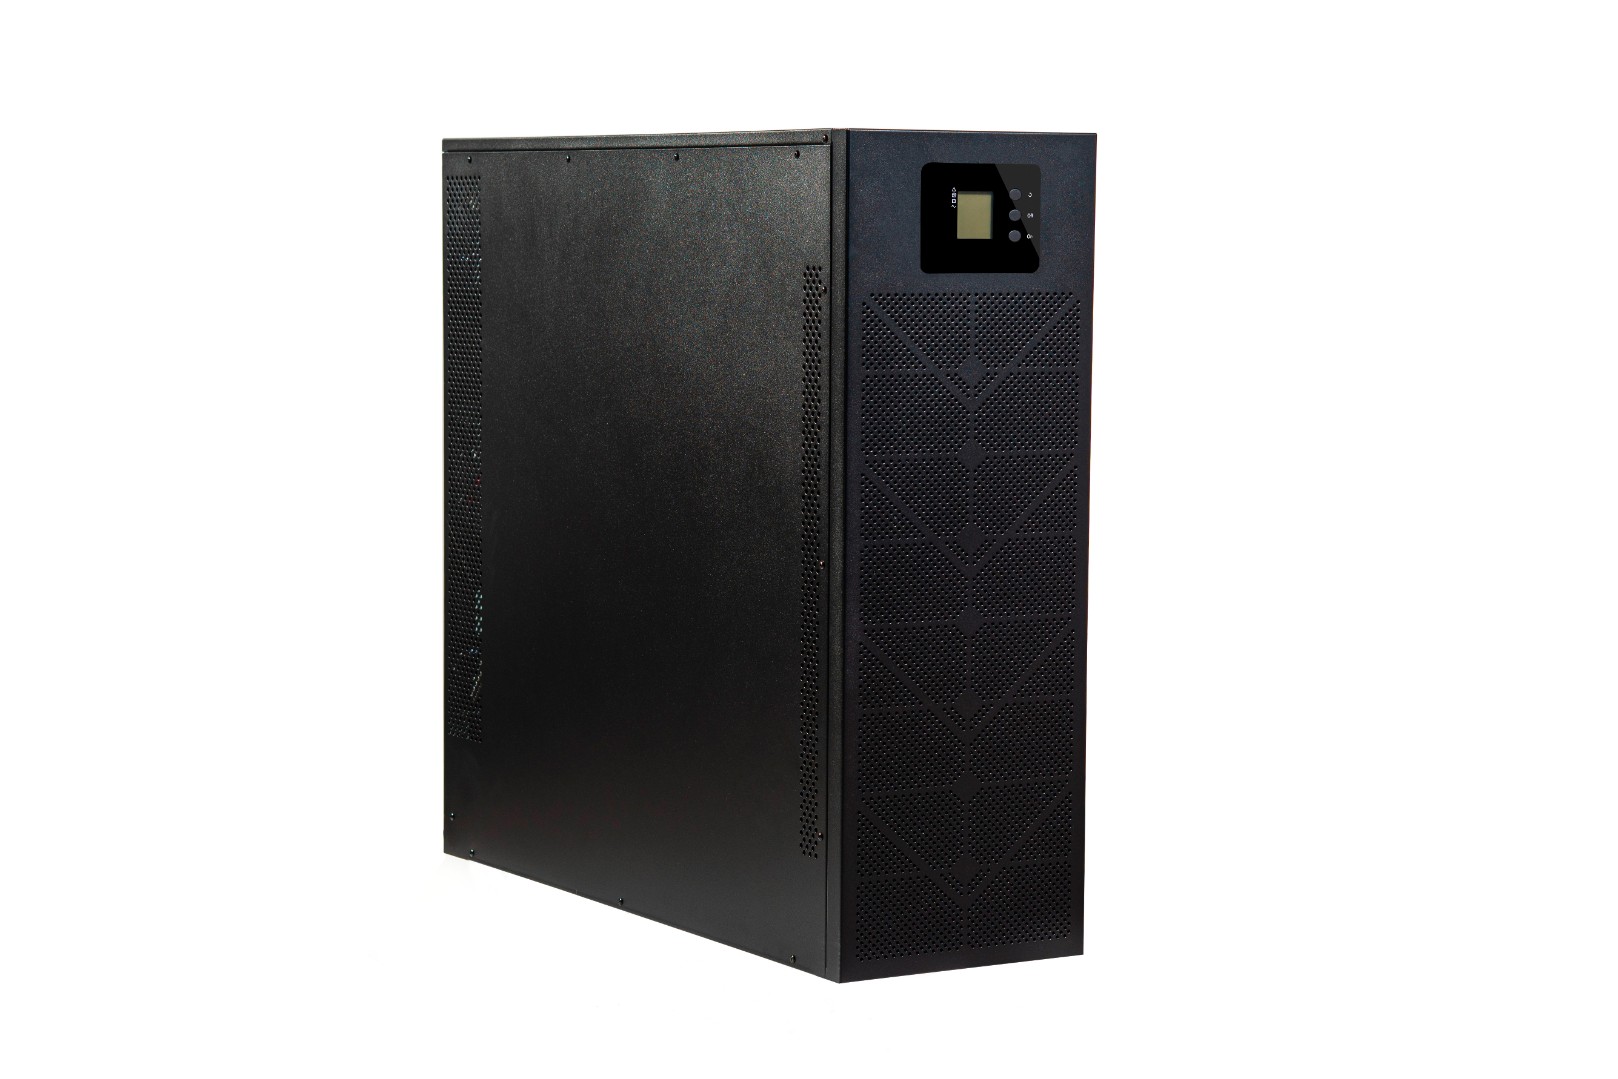 ИБП БАСТИОН SKAT-UPS 100-3/3, 100000 В·А, 100 кВт, клеммная колодка, USB, черный (8988)